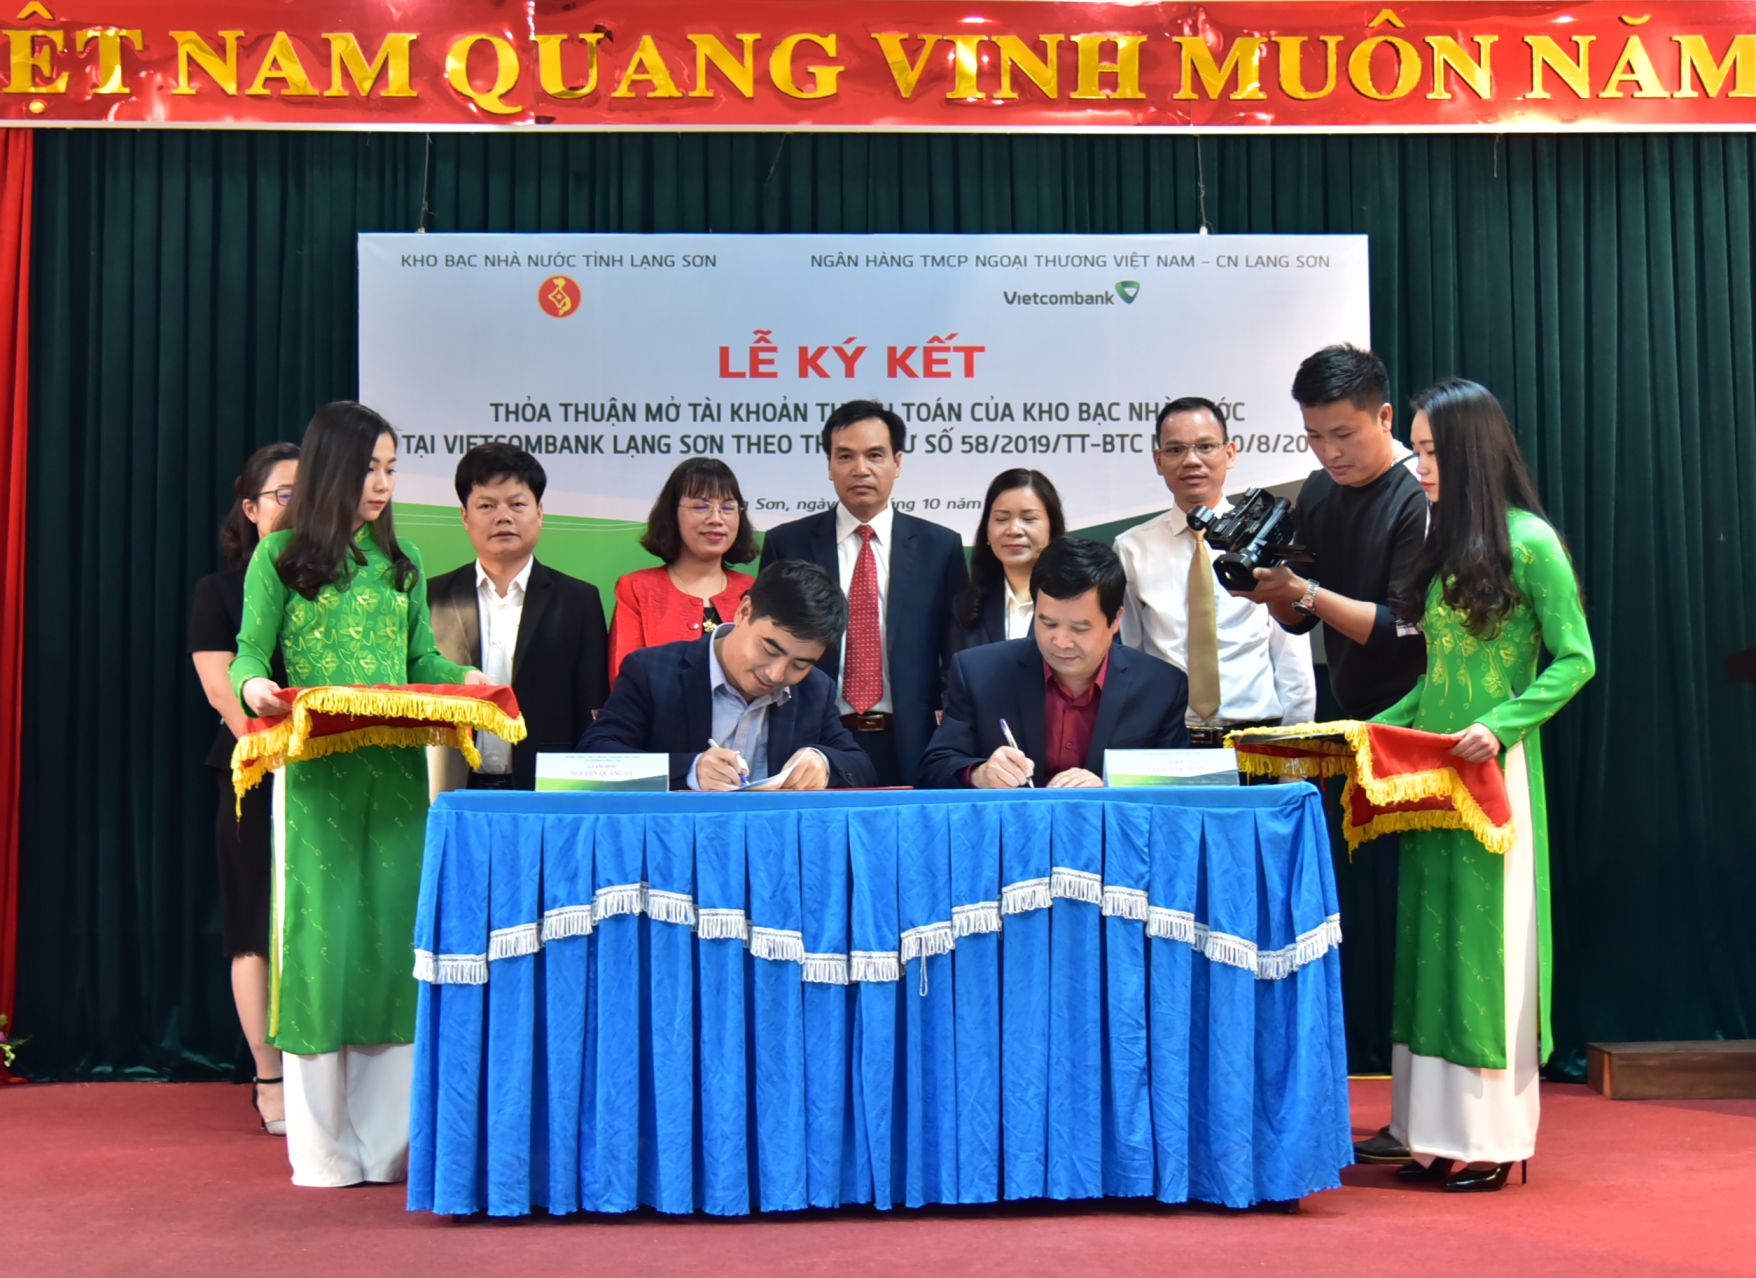 Mở tài khoản thanh toán của Kho bạc Nhà nước tỉnh Lạng Sơn tại Vietcombank Lạng Sơn theo Thông tư số 58/2019/TT-BTC ngày 30/08/2019